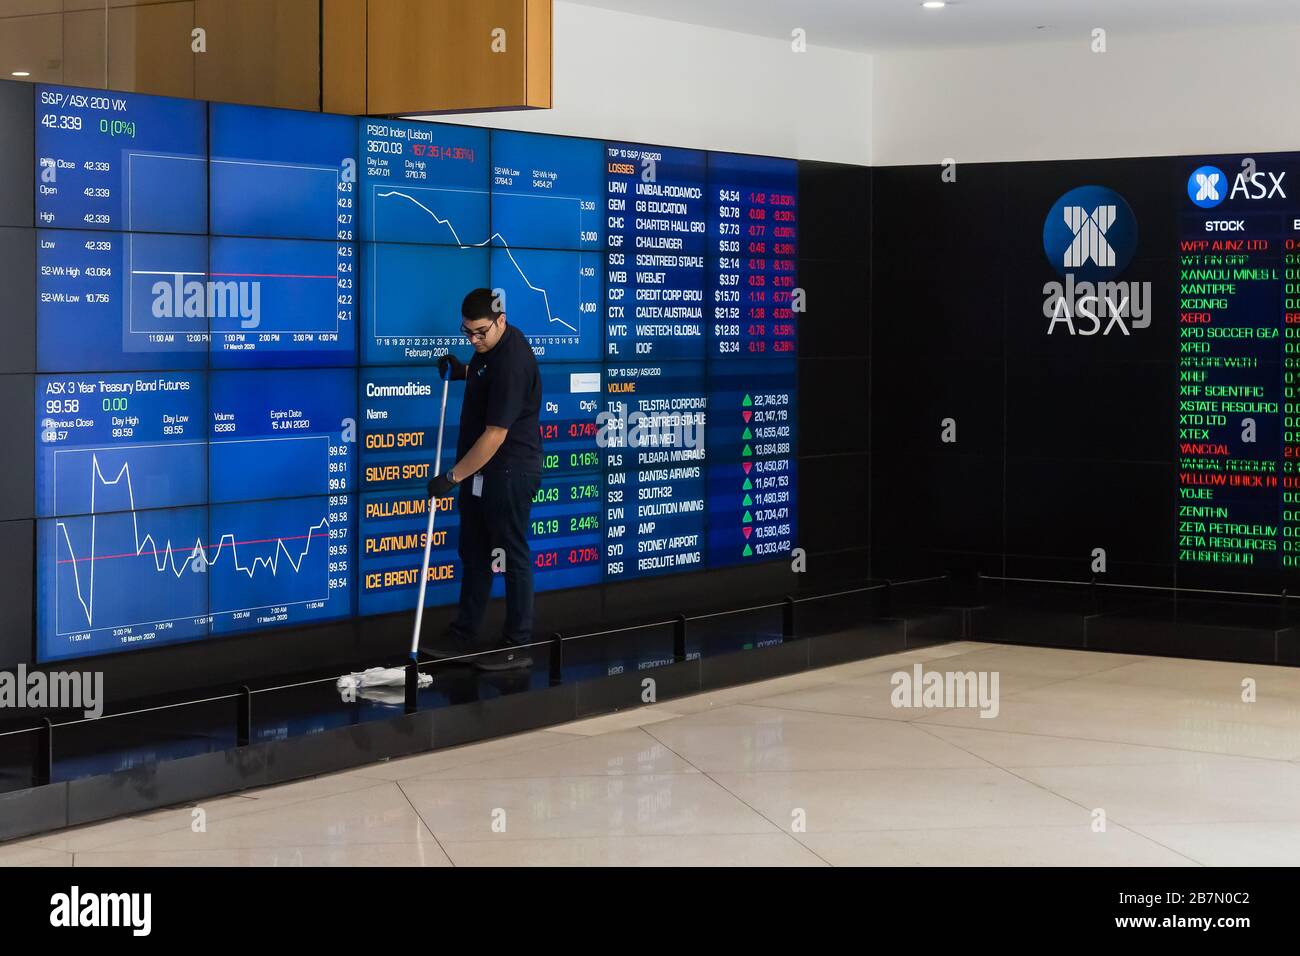 L'Australian Securities Exchange nel Central Business District di Sydney è molto vuoto a causa dell'epidemia di Coronavirus, con pochissimi worke da ufficio Foto Stock